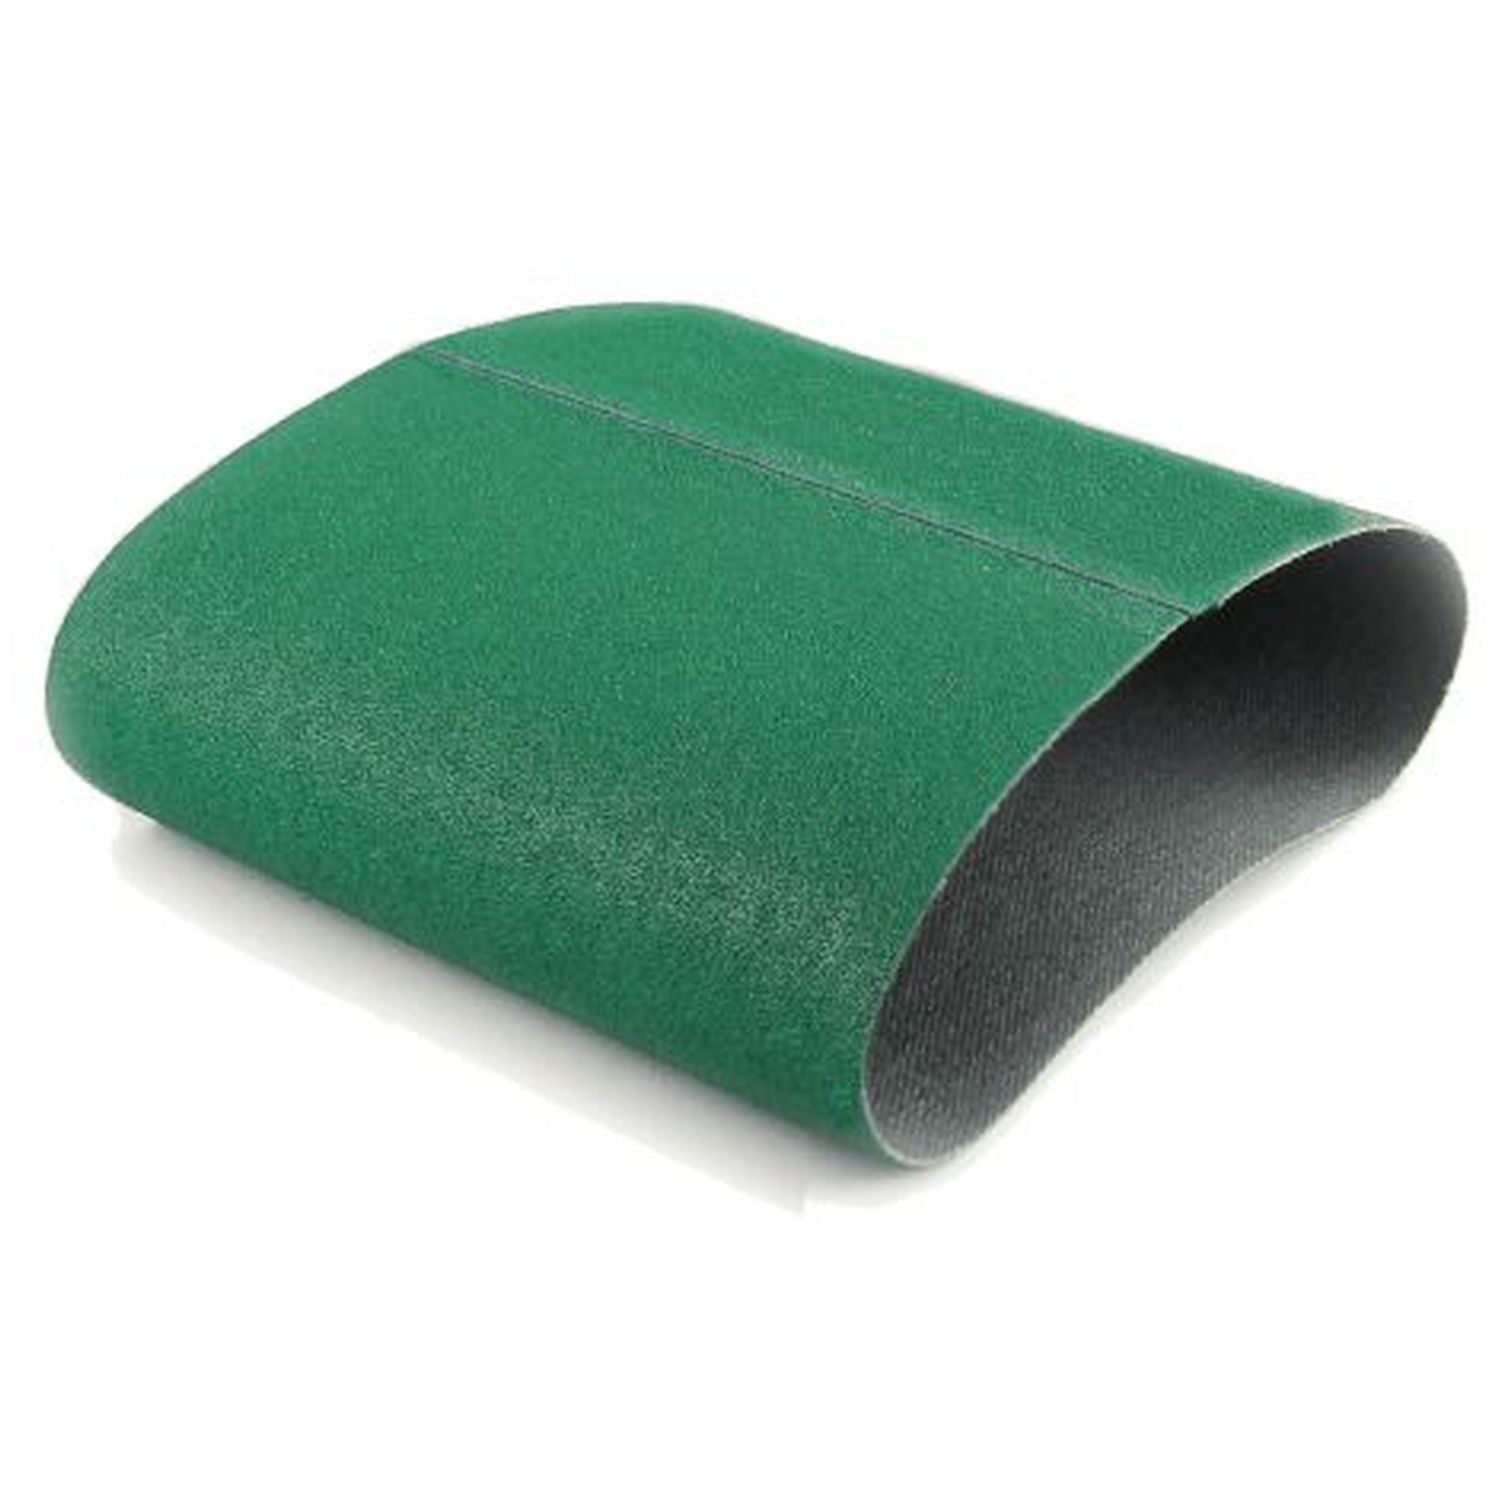 8 X 19 Inch Premium Zirconia Floor Sanding Belt - 3PK - Red Label Abrasives